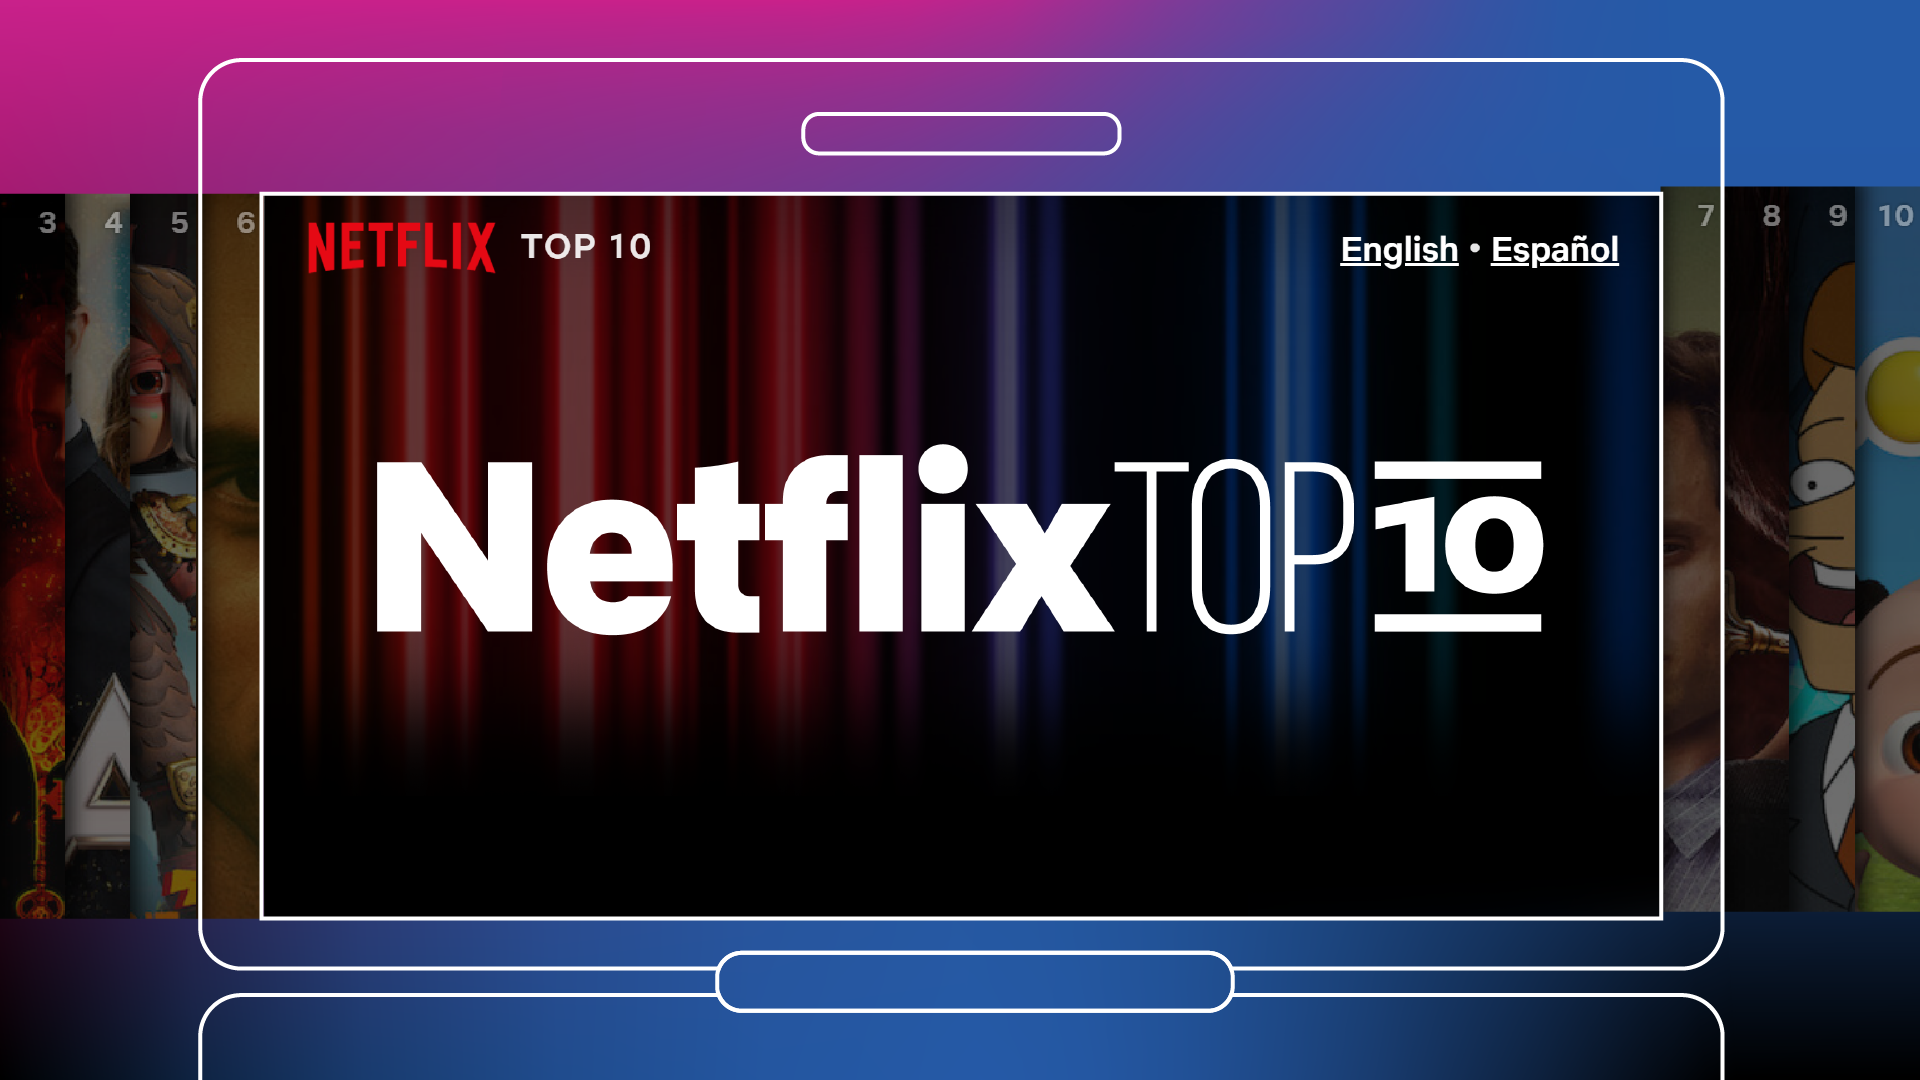 alt="Top10.Netflix.com"